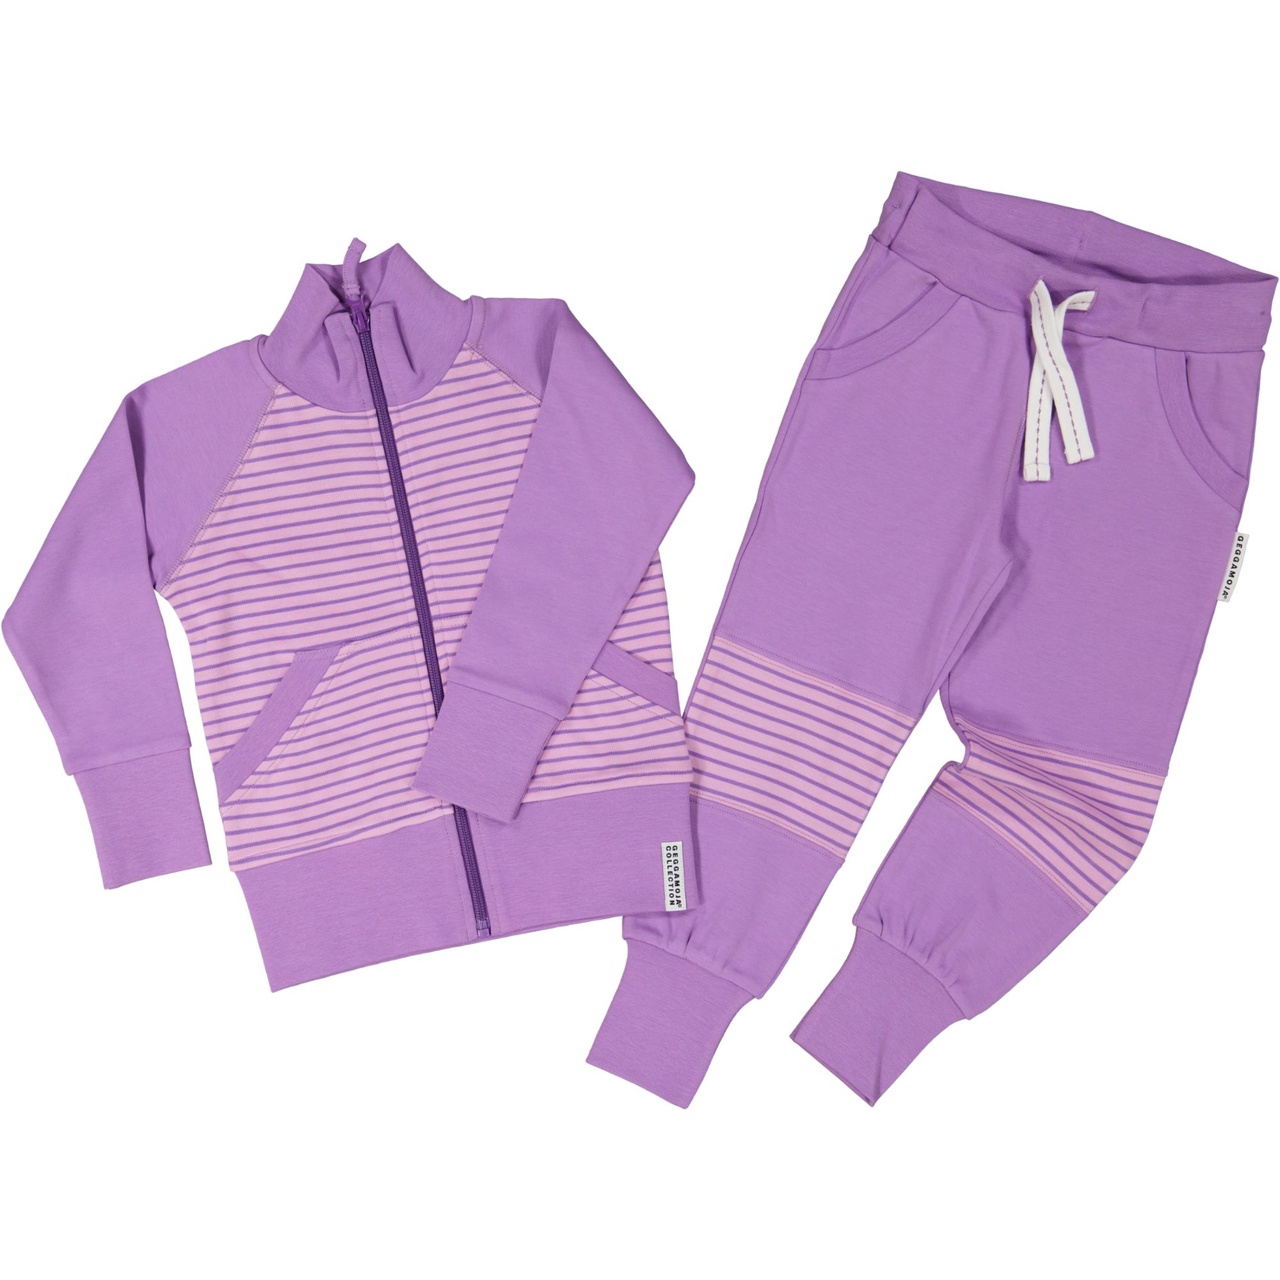 Zip sweater L.purple/purple  146/152